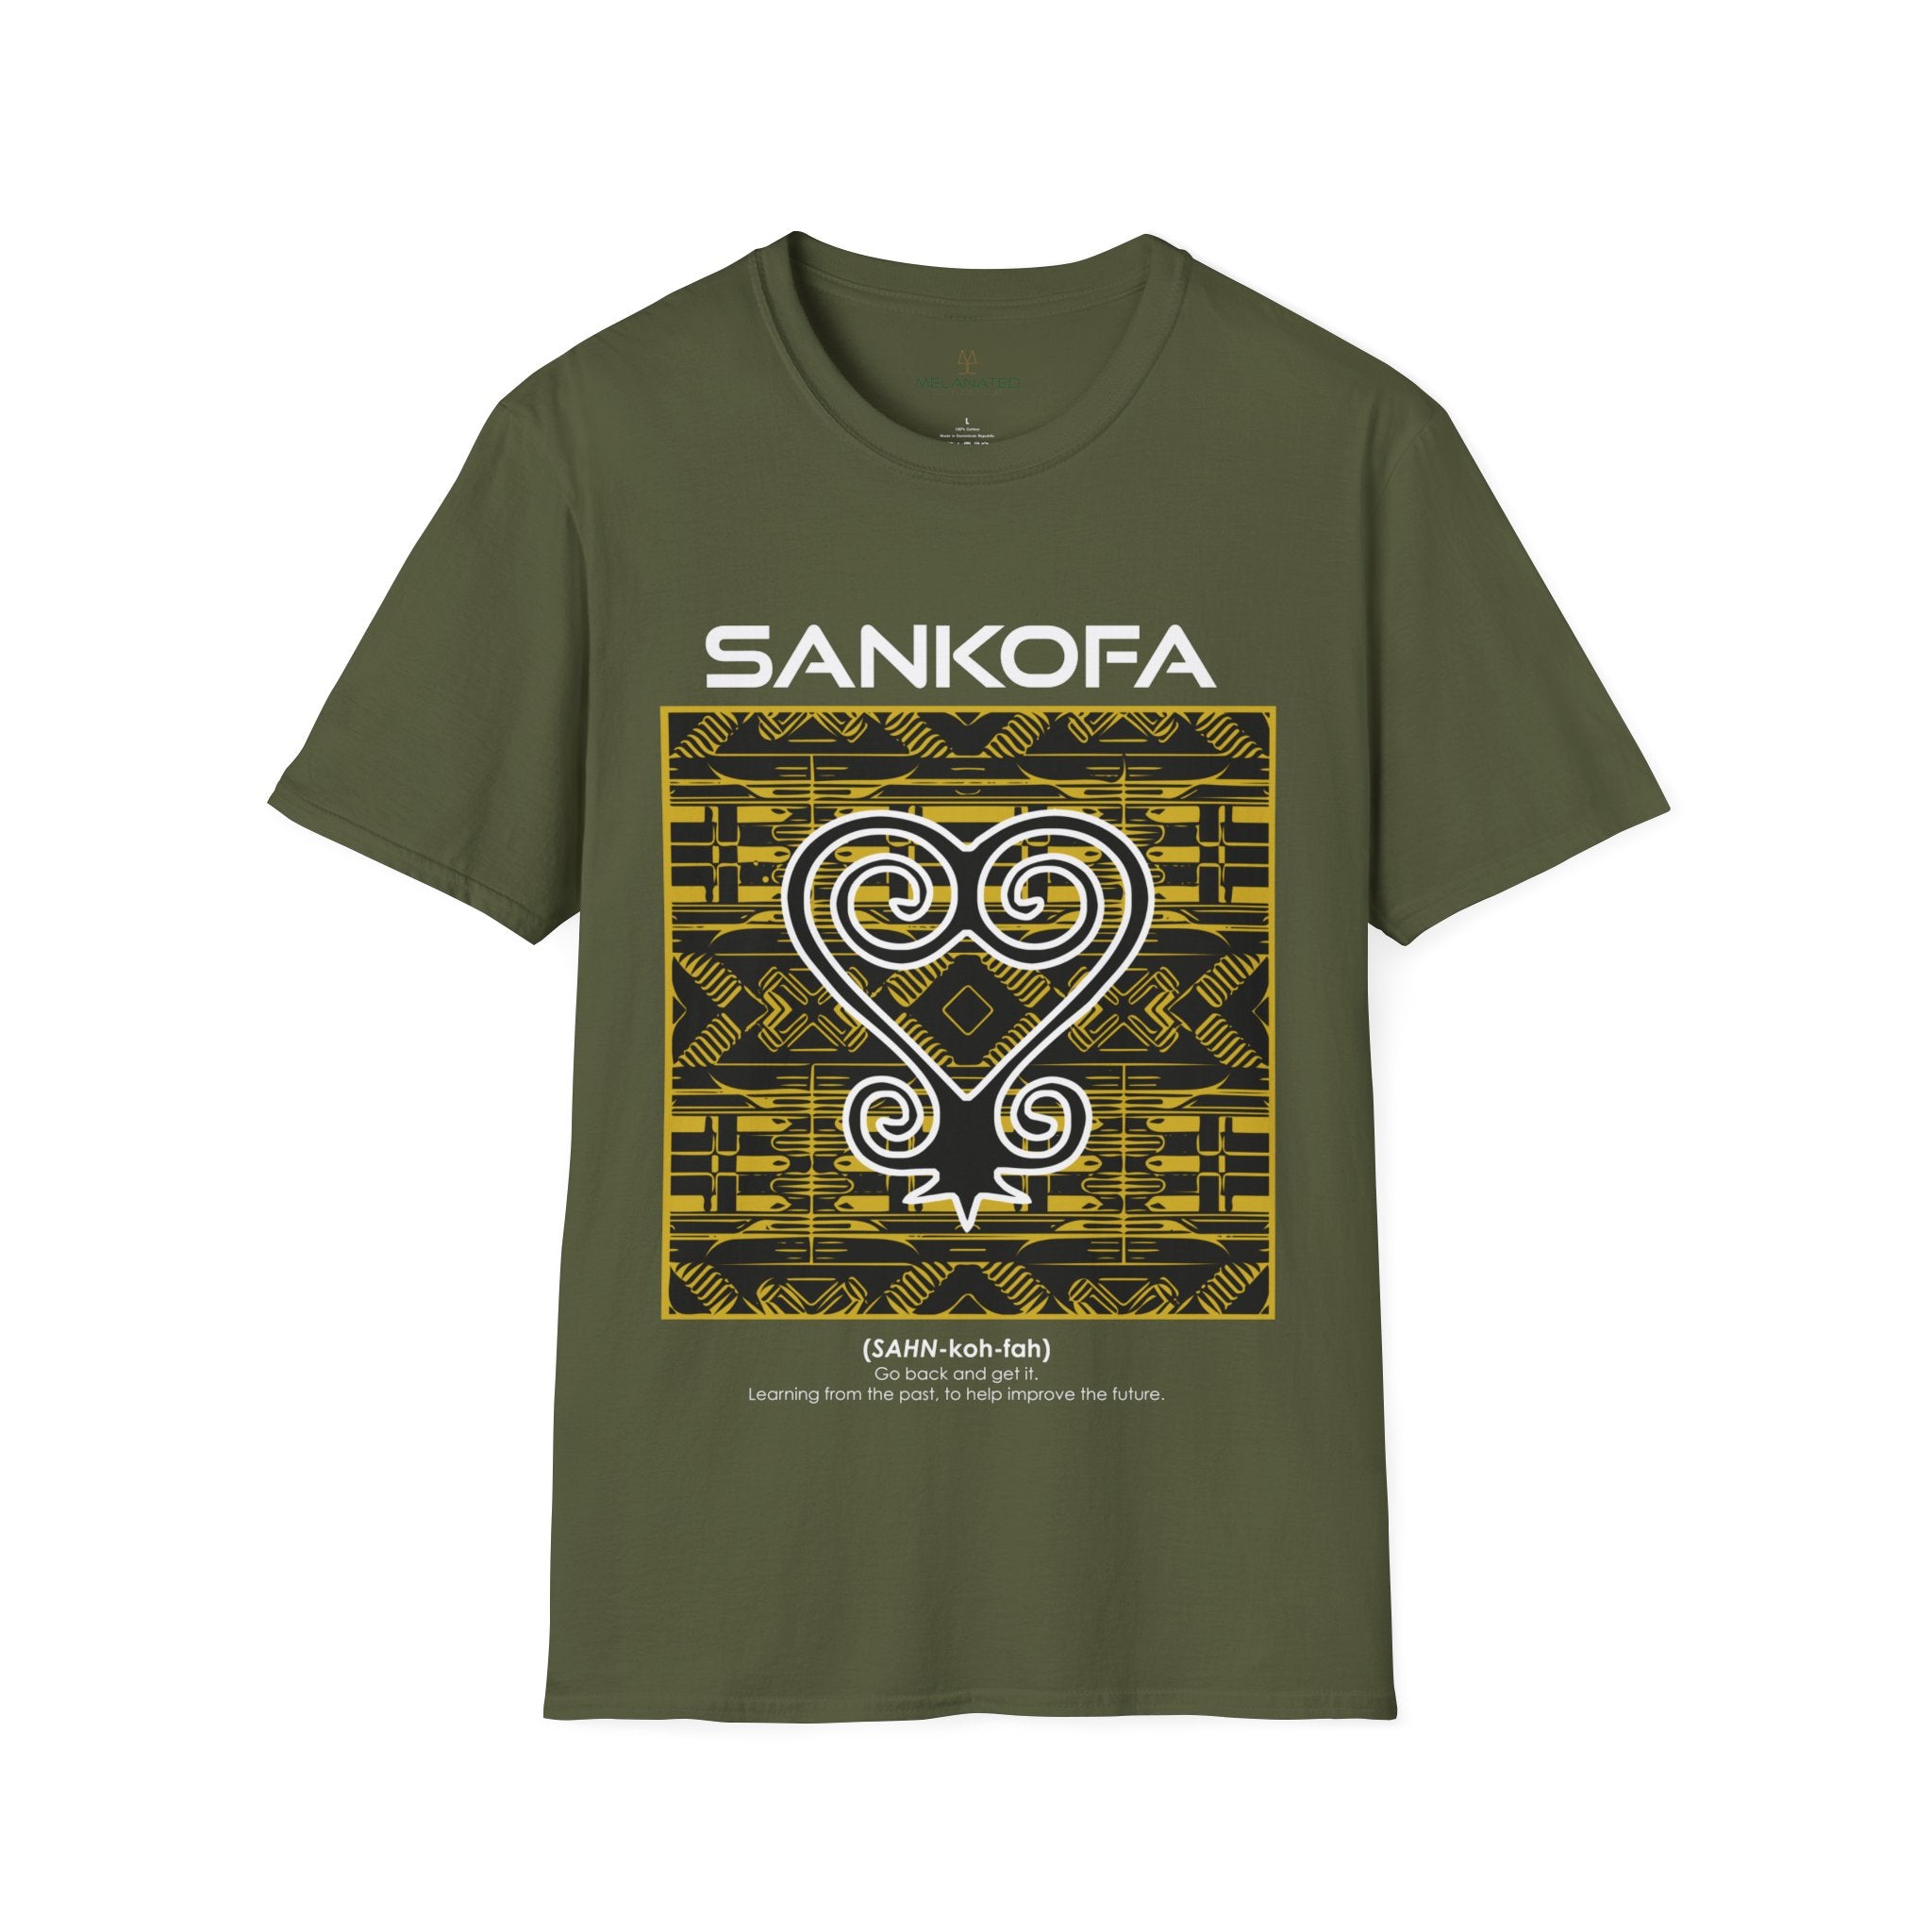 Adinka Sankofa African Tee Shirt in olive.